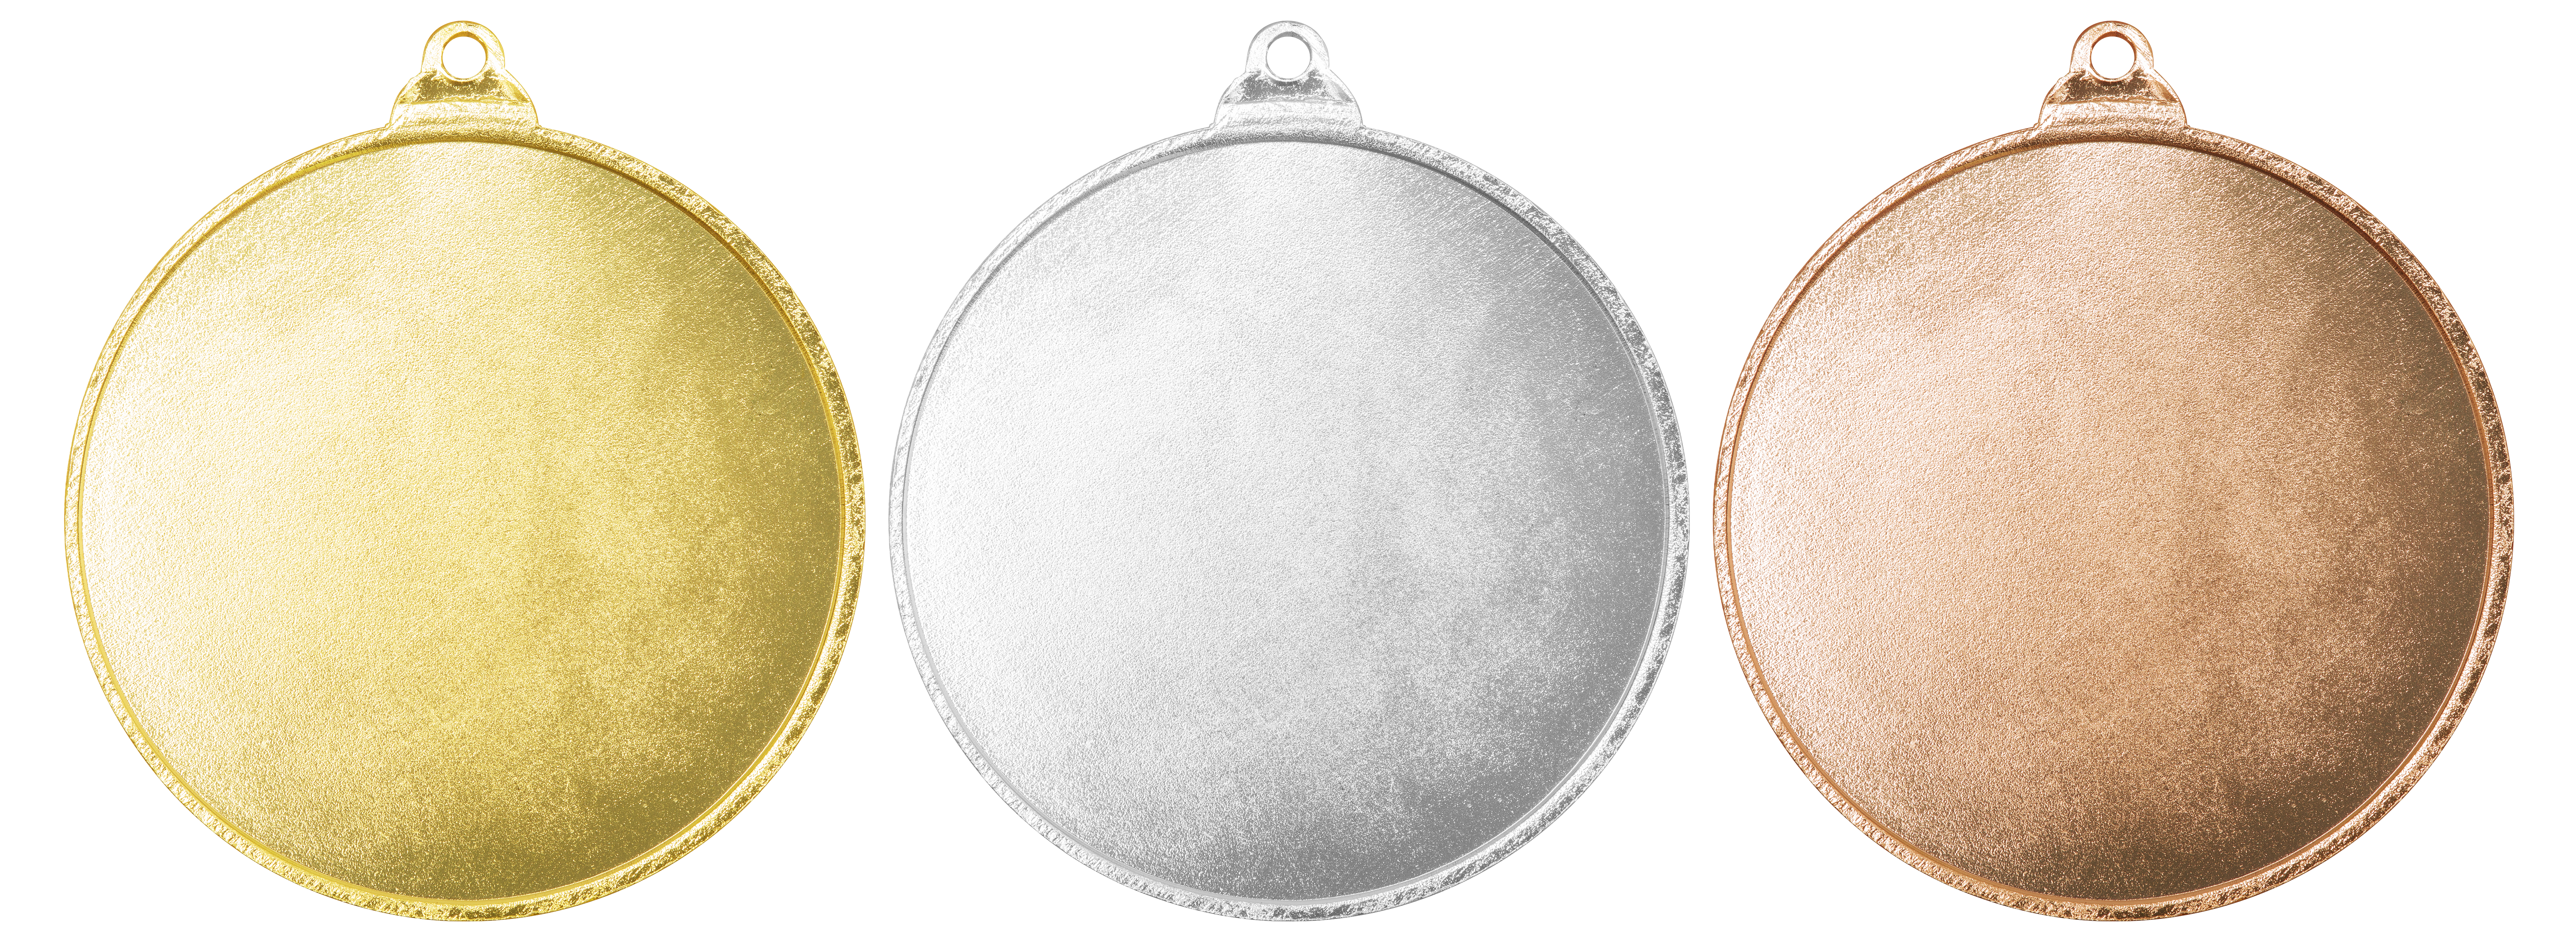 Обратная сторона медали. Медальки Голд Сильвер бронзе. Золотая медаль пустая. Серебряная медаль без надписи.